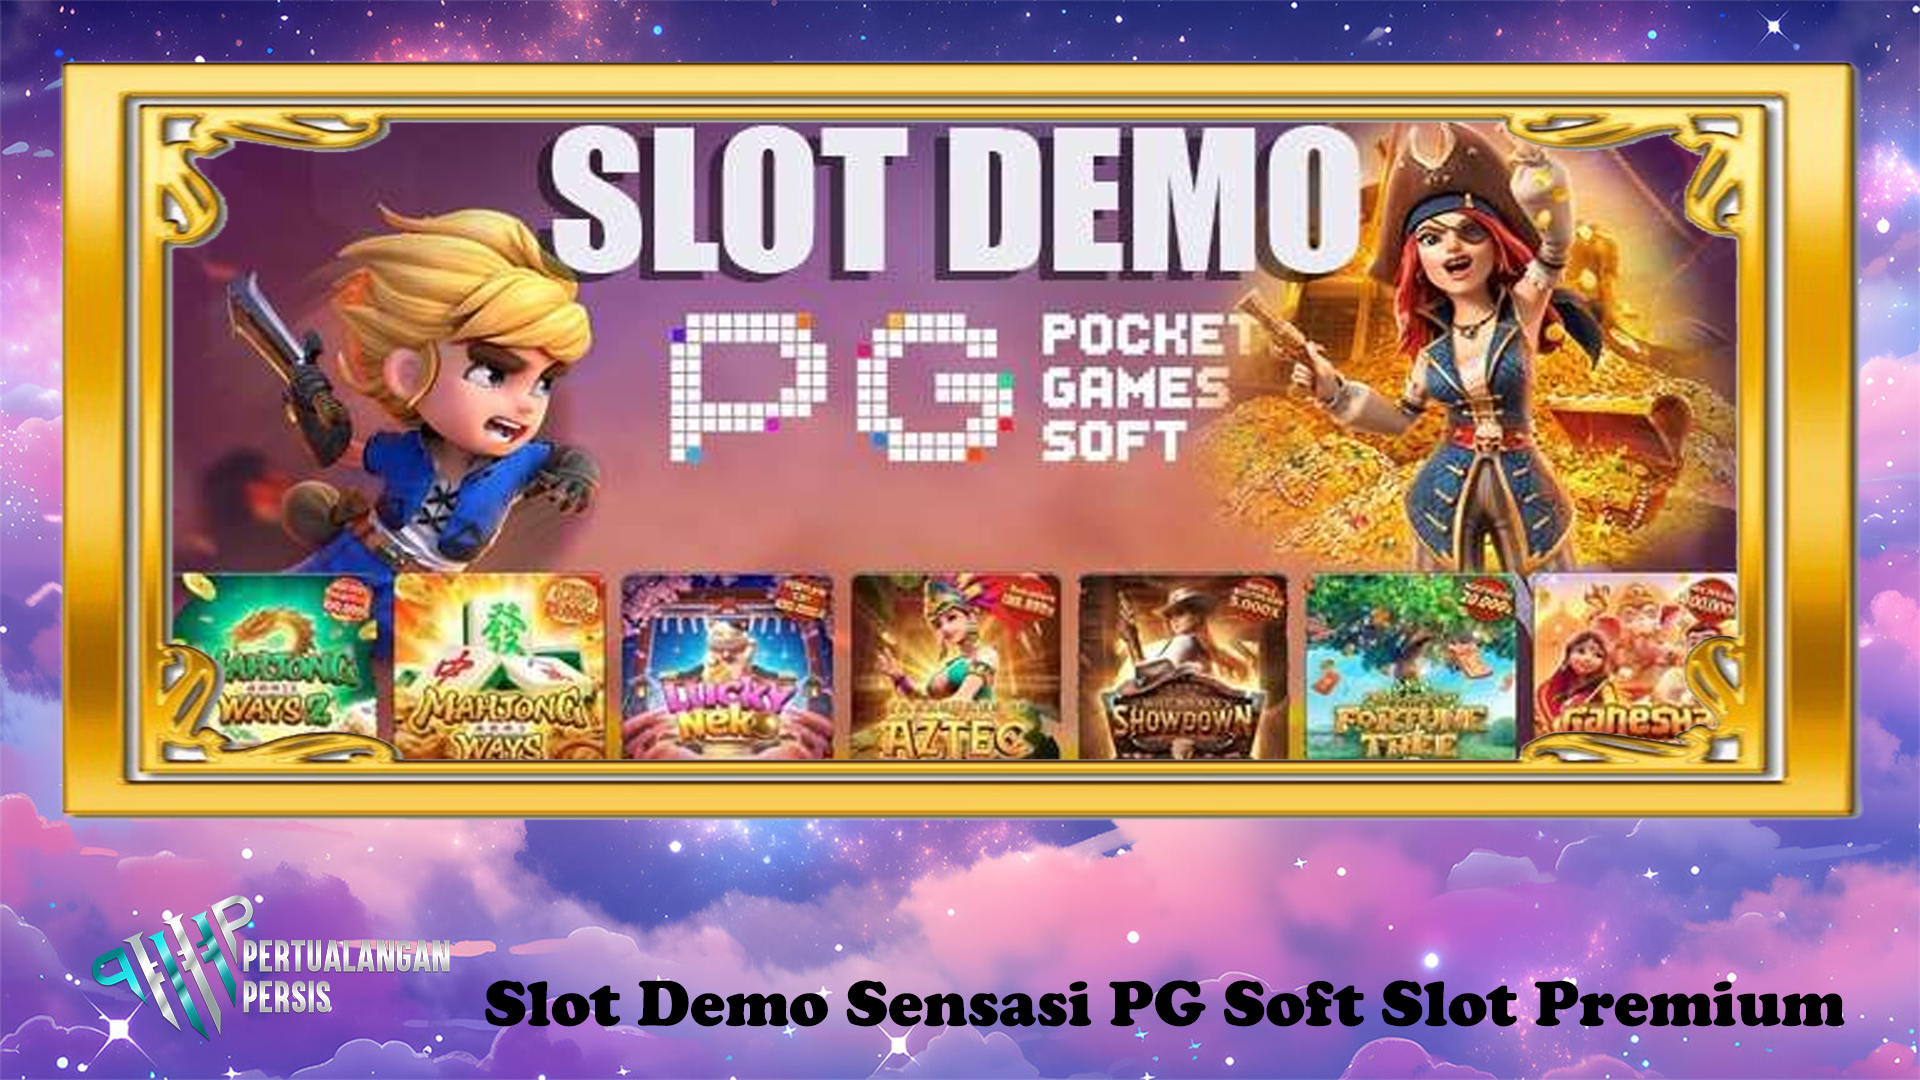 Slot Demo Sensasi PG Soft Slot Premium